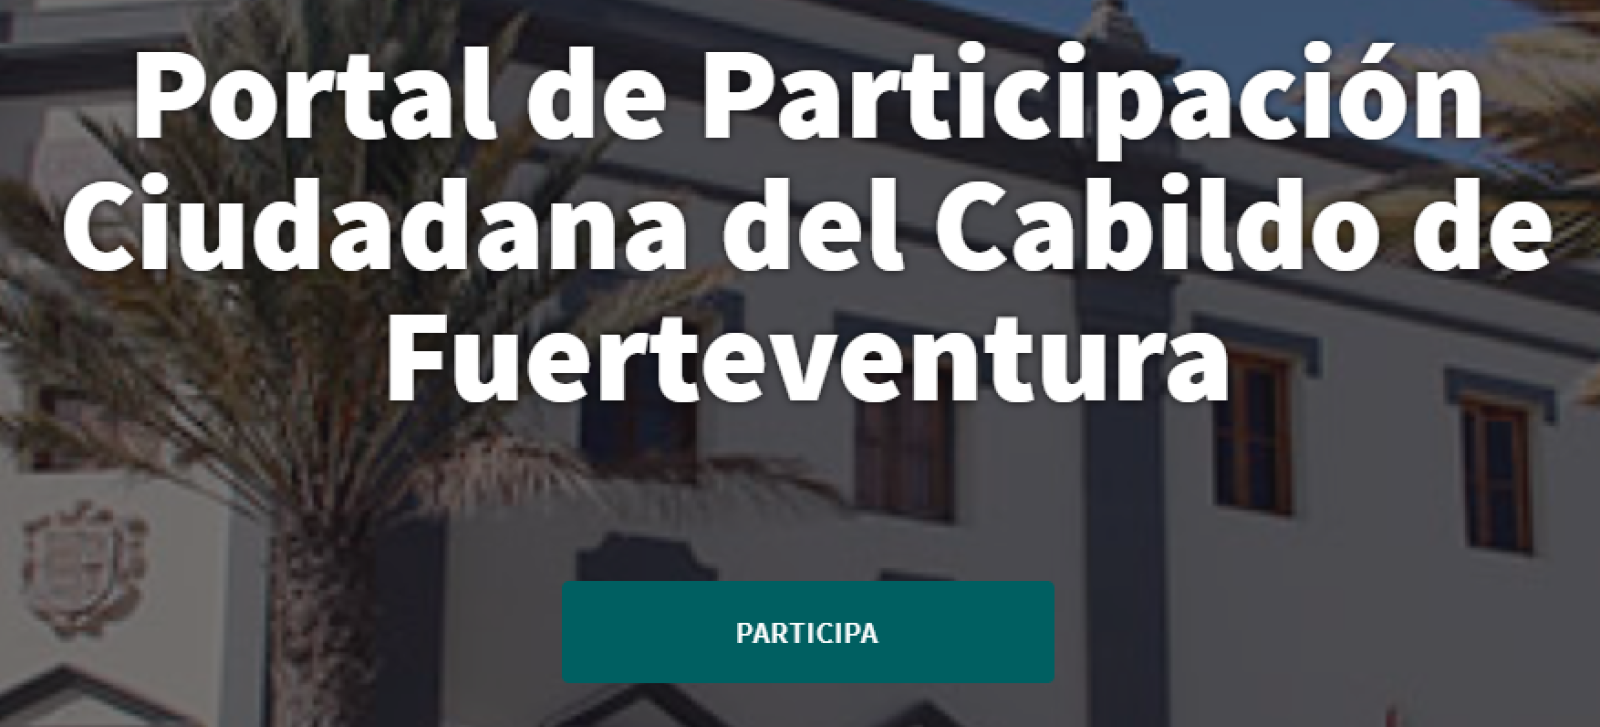 Portal Participación Ciudadana